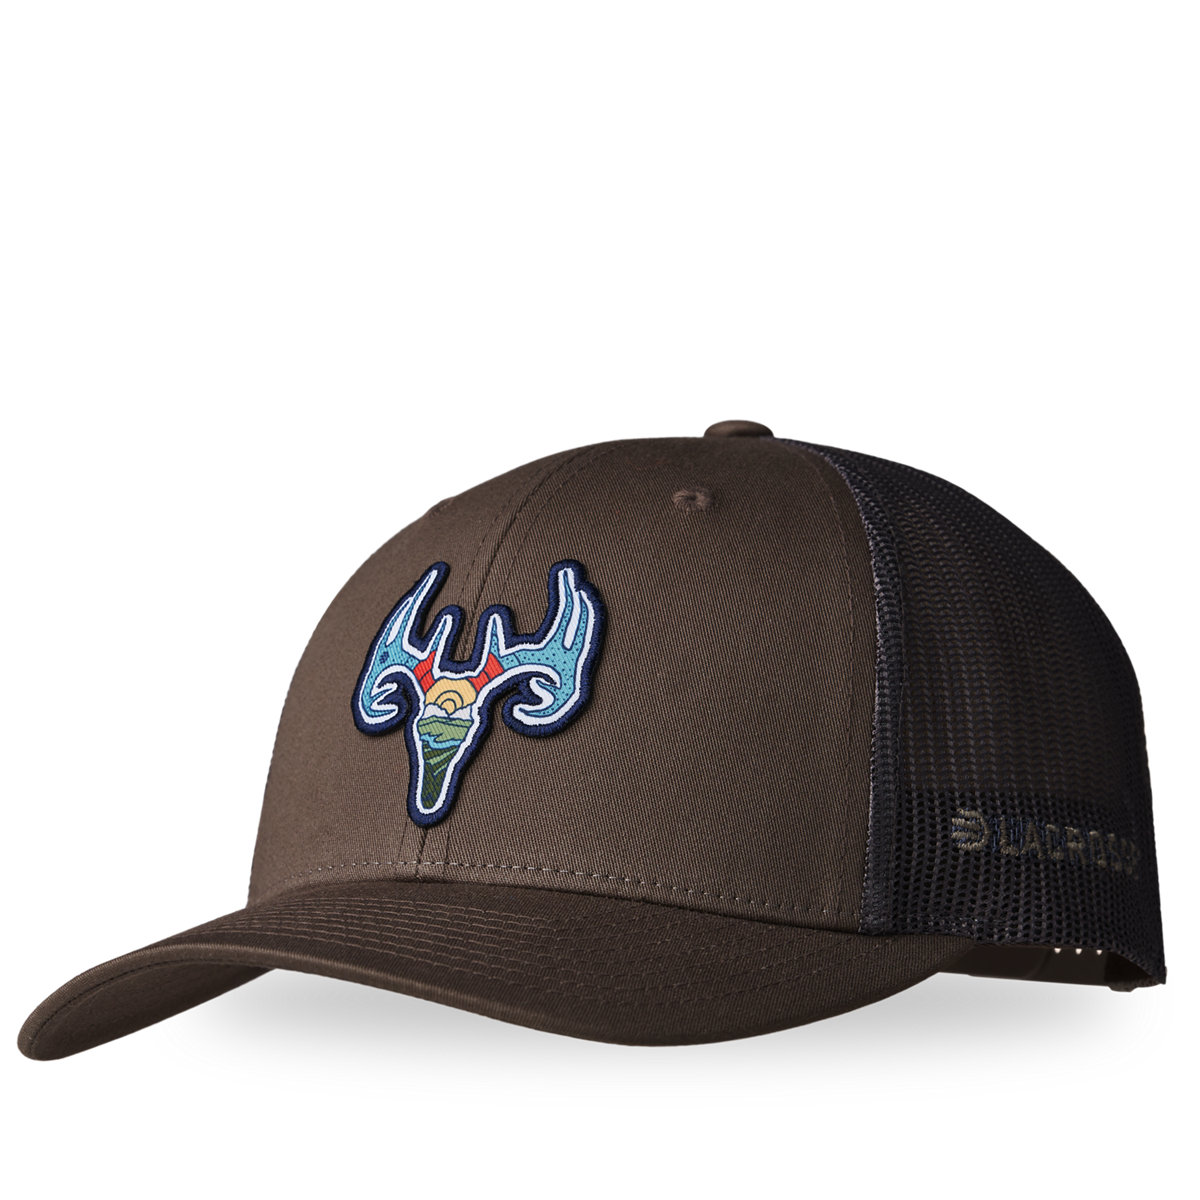 LaCrosse Footwear - LaCrosse Trucker Deer Hat - Brown Choc Chip/Grey